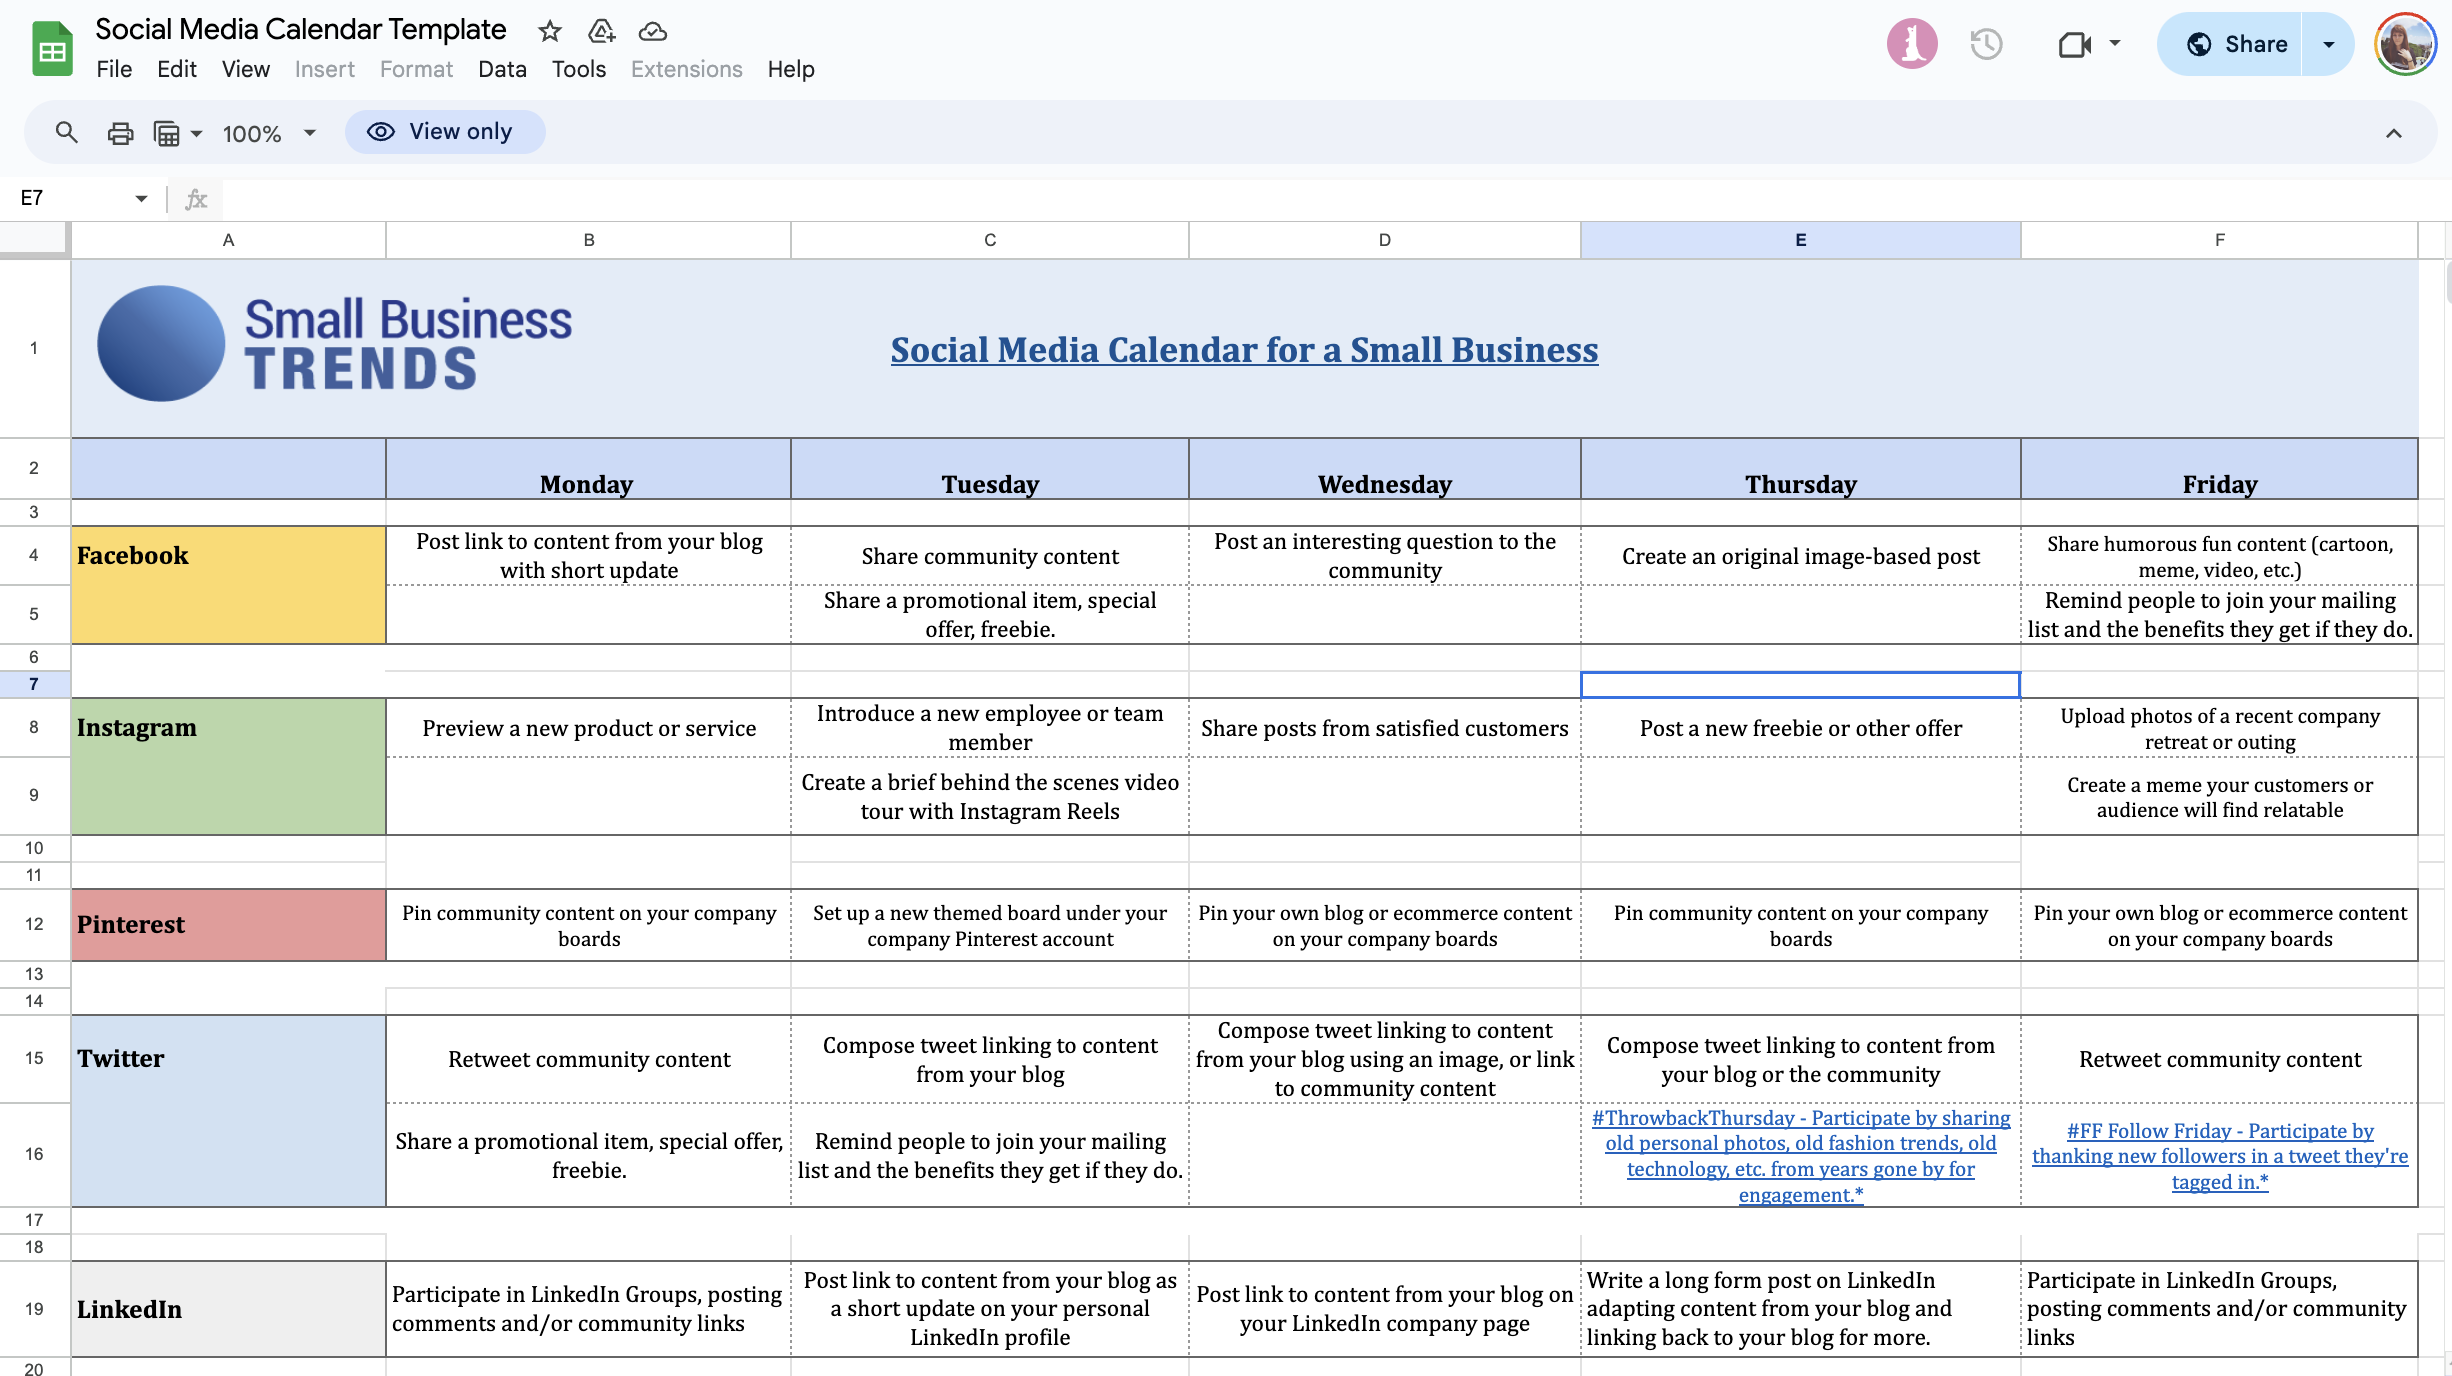 Captura de pantalla de la mejor hoja de cálculo de calendario de contenidos para 2024. El diseño incluye pestañas para diferentes plataformas como Facebook, Instagram, Pinterest, Twitter y LinkedIn con estrategias detalladas de publicación diaria.